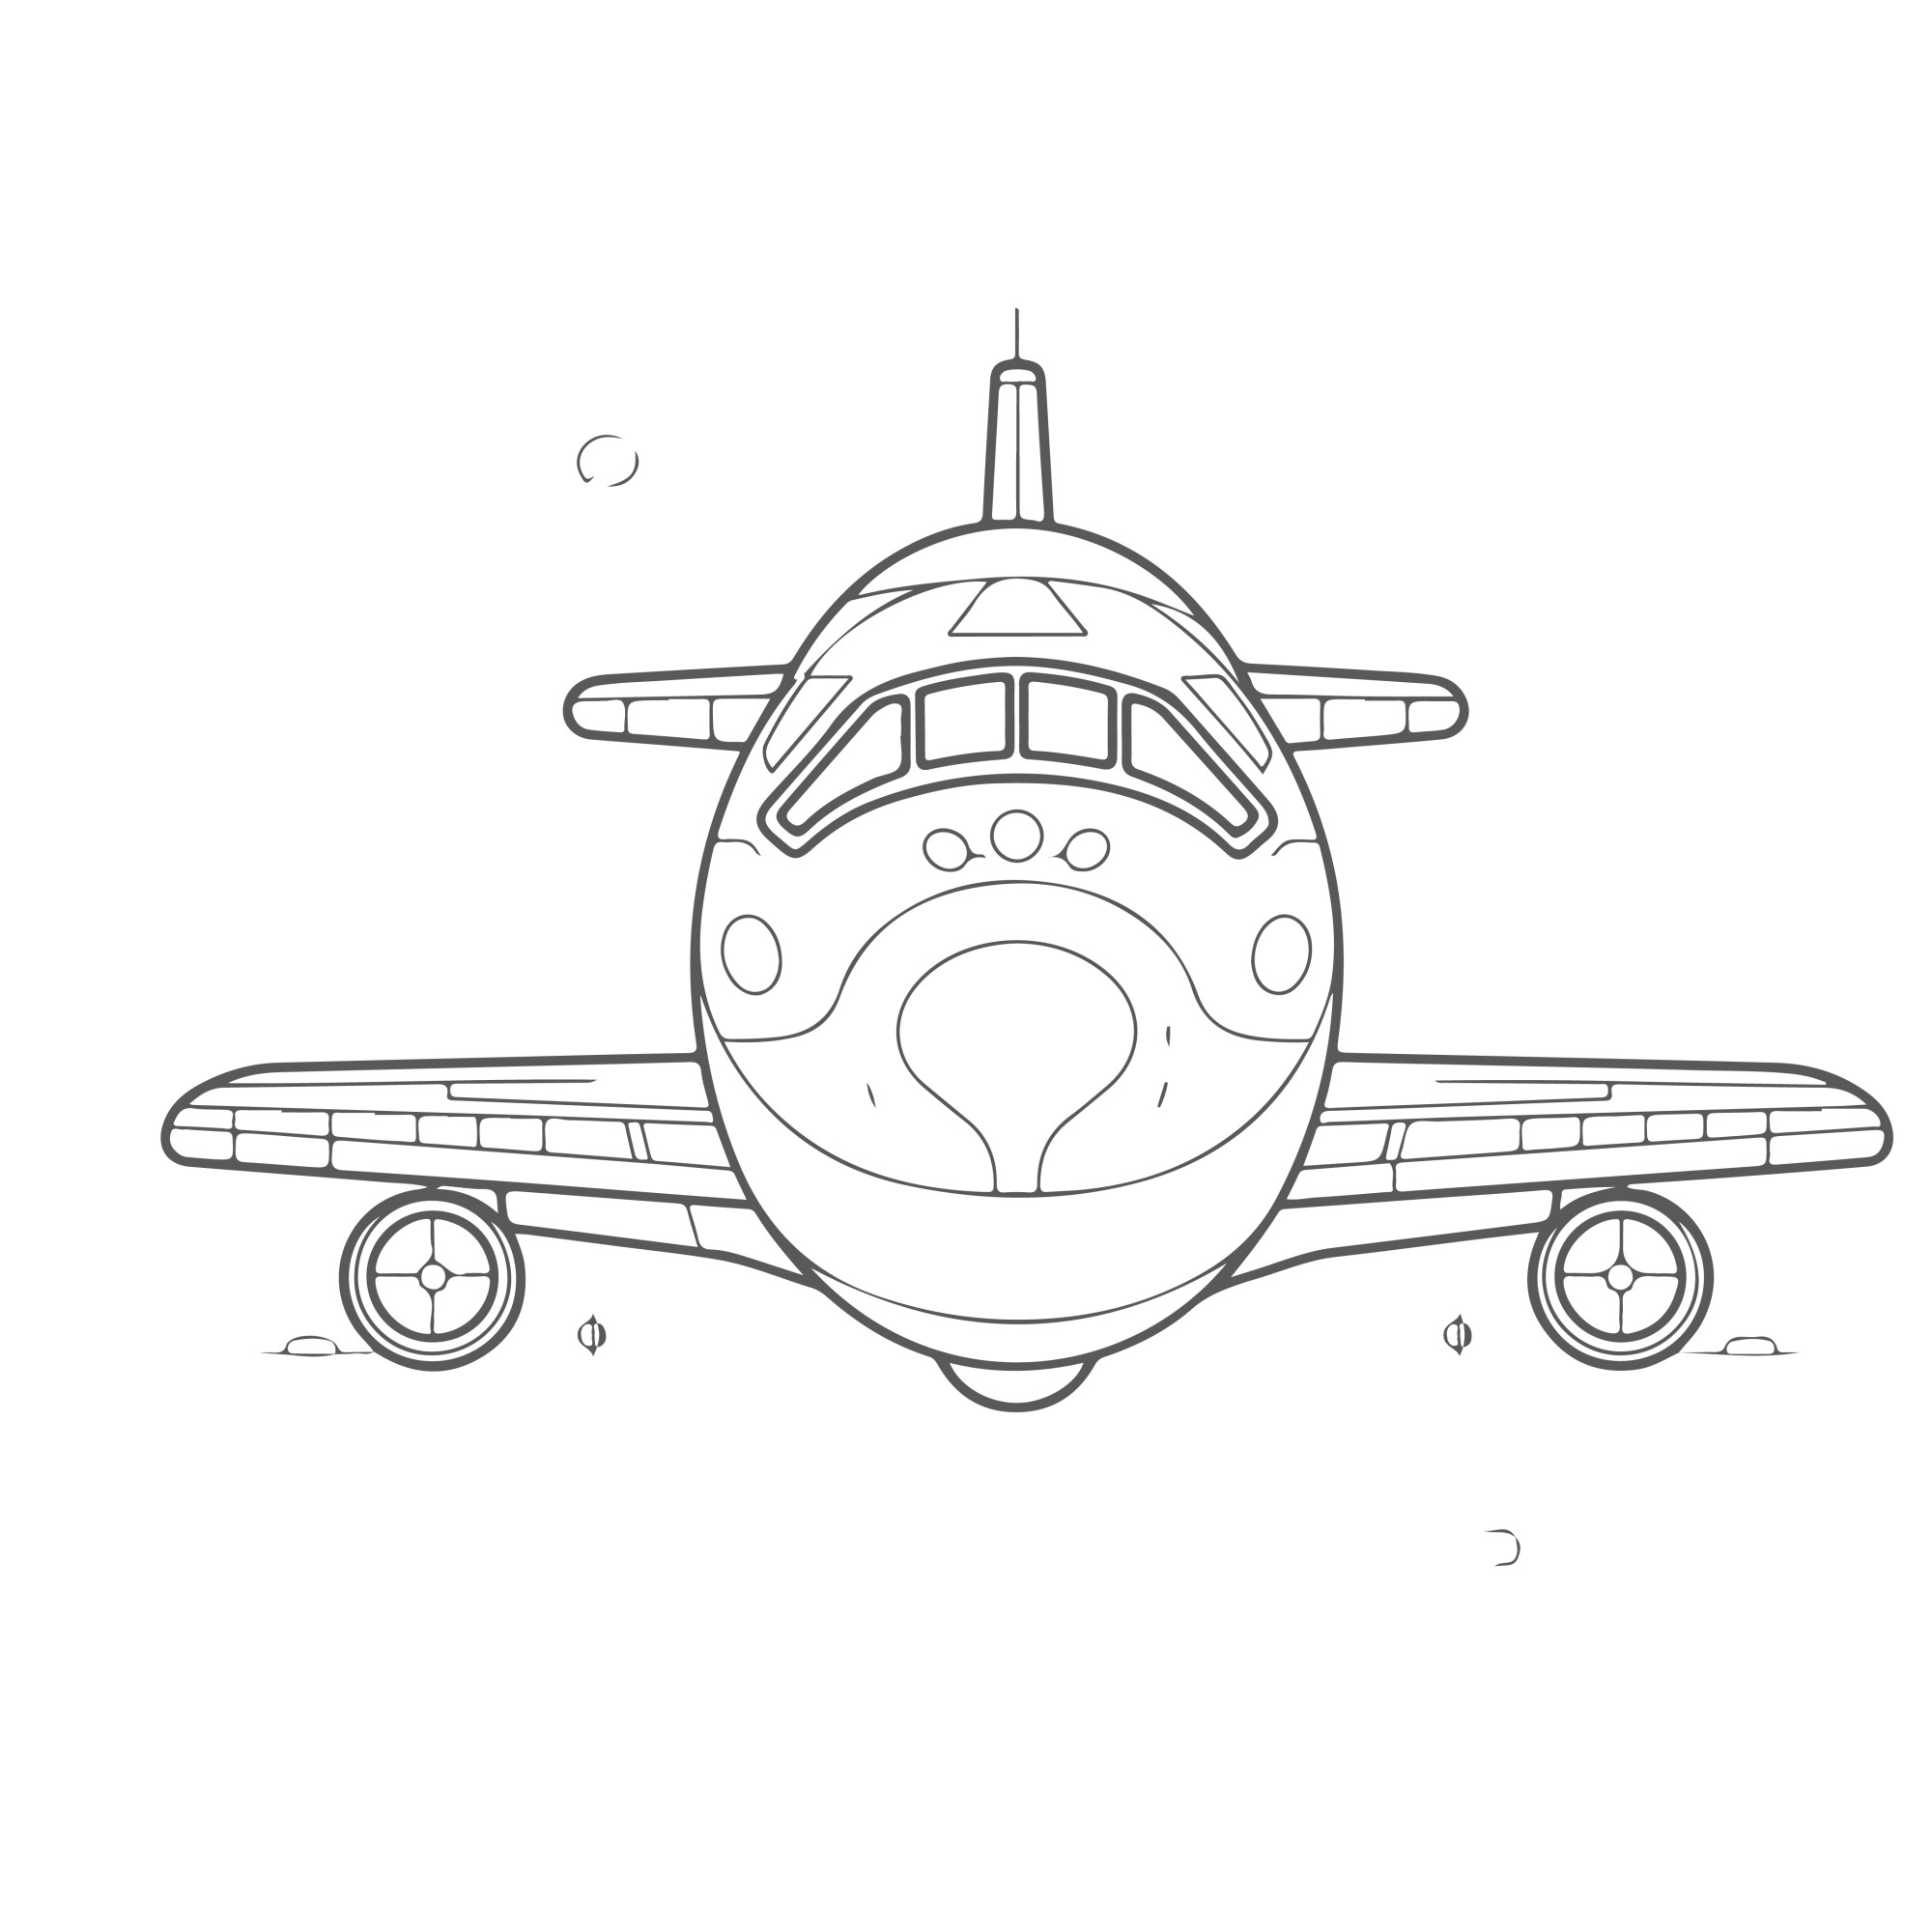 Раскраска для детей: самолет «Авиационная фантазия»